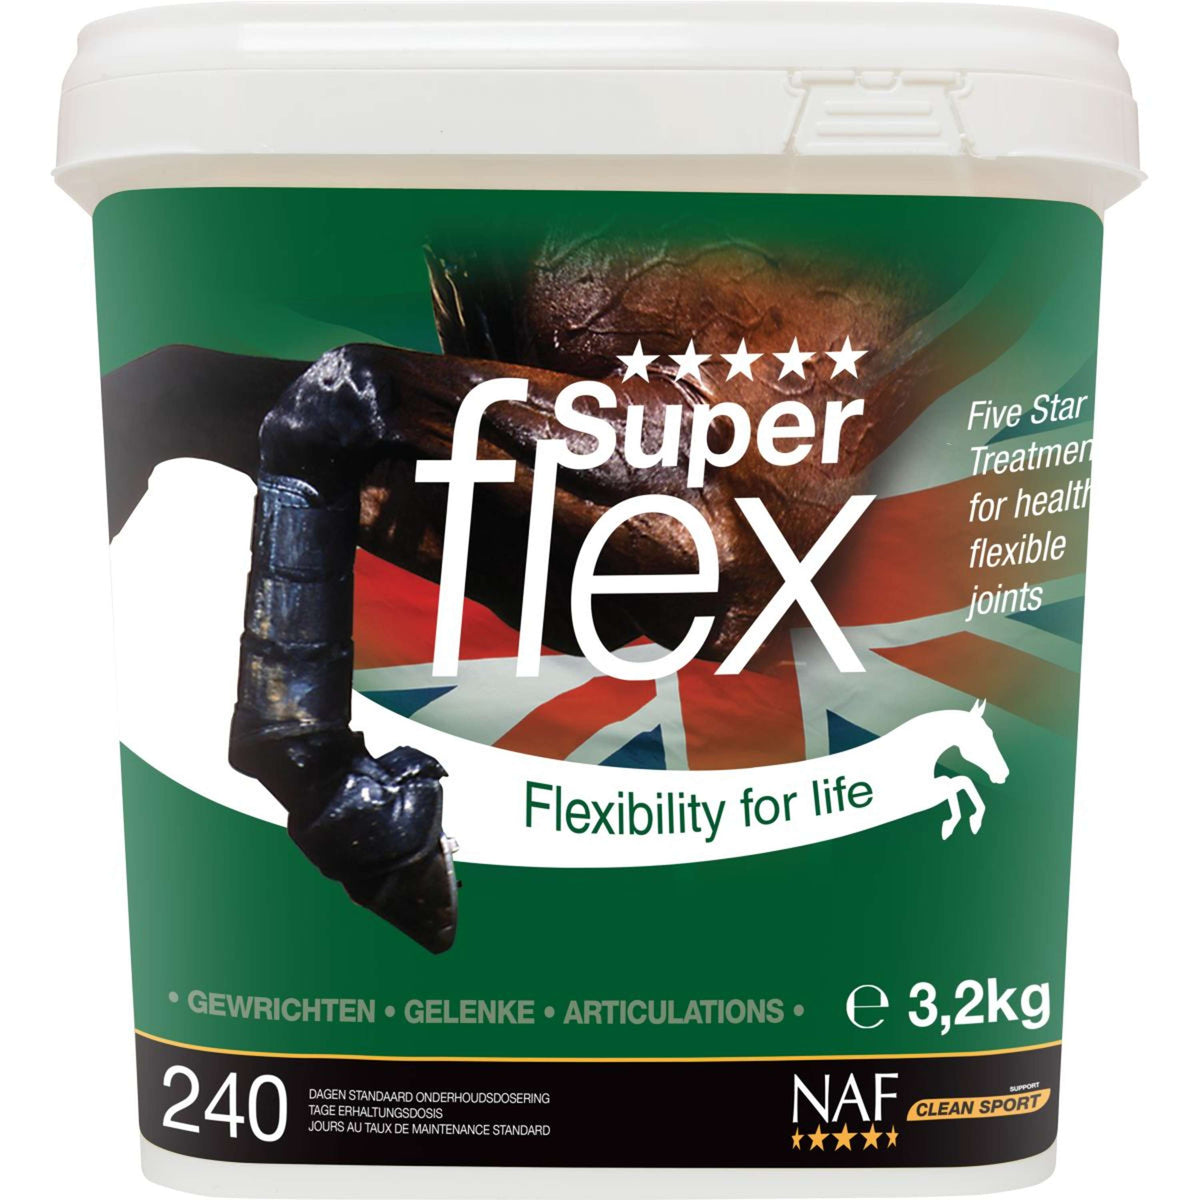 NAF Superflex